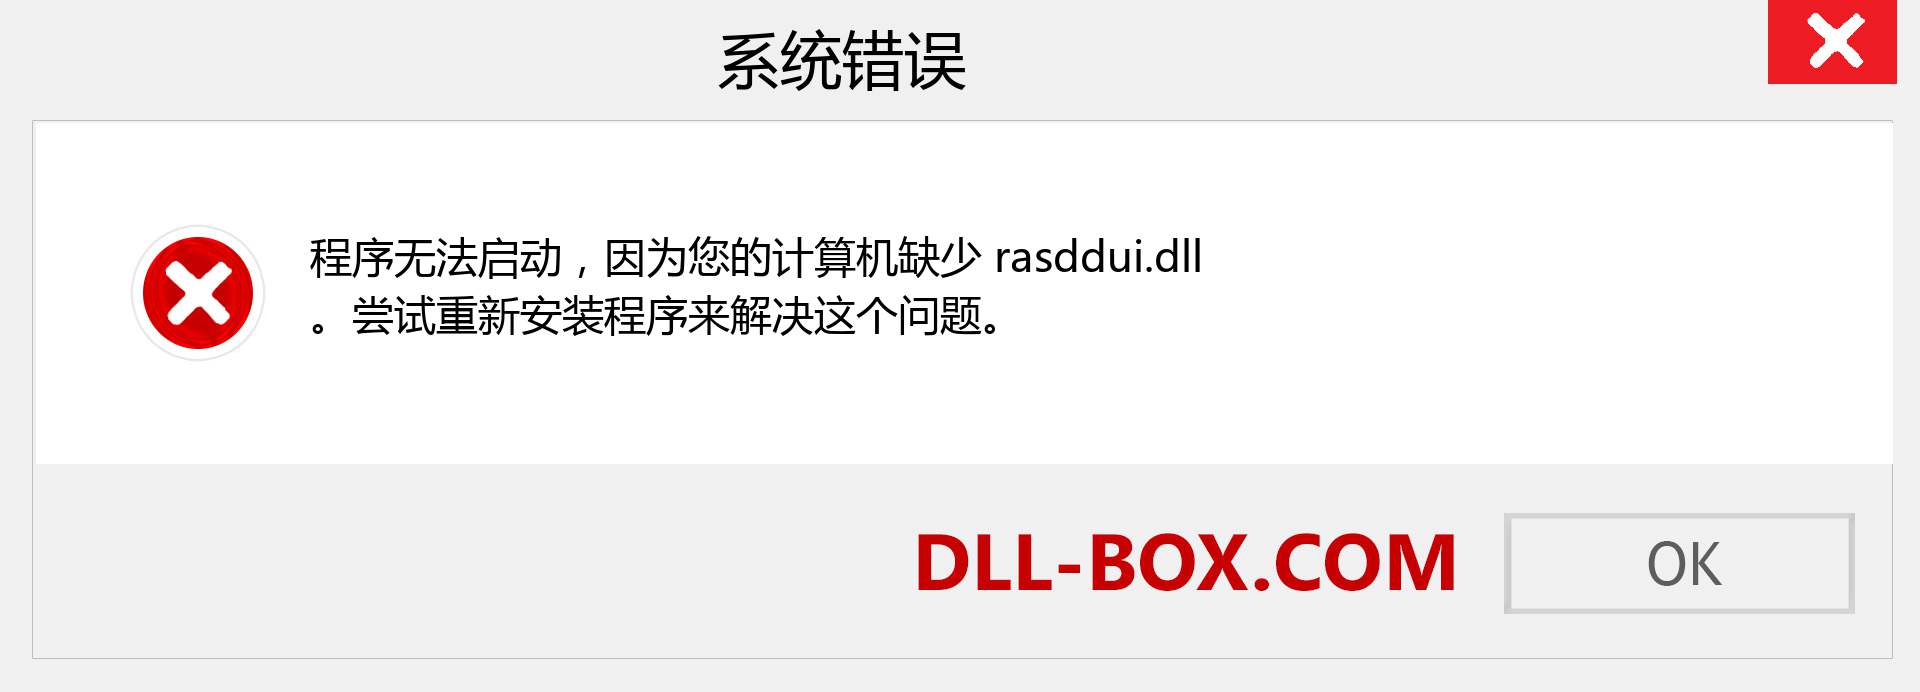 rasddui.dll 文件丢失？。 适用于 Windows 7、8、10 的下载 - 修复 Windows、照片、图像上的 rasddui dll 丢失错误